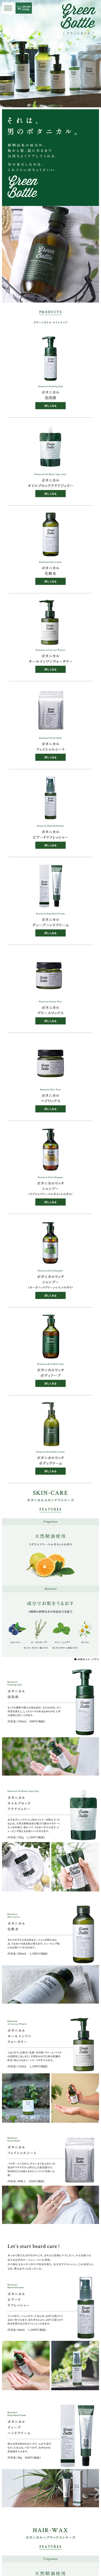 Green Bottle_sp_1